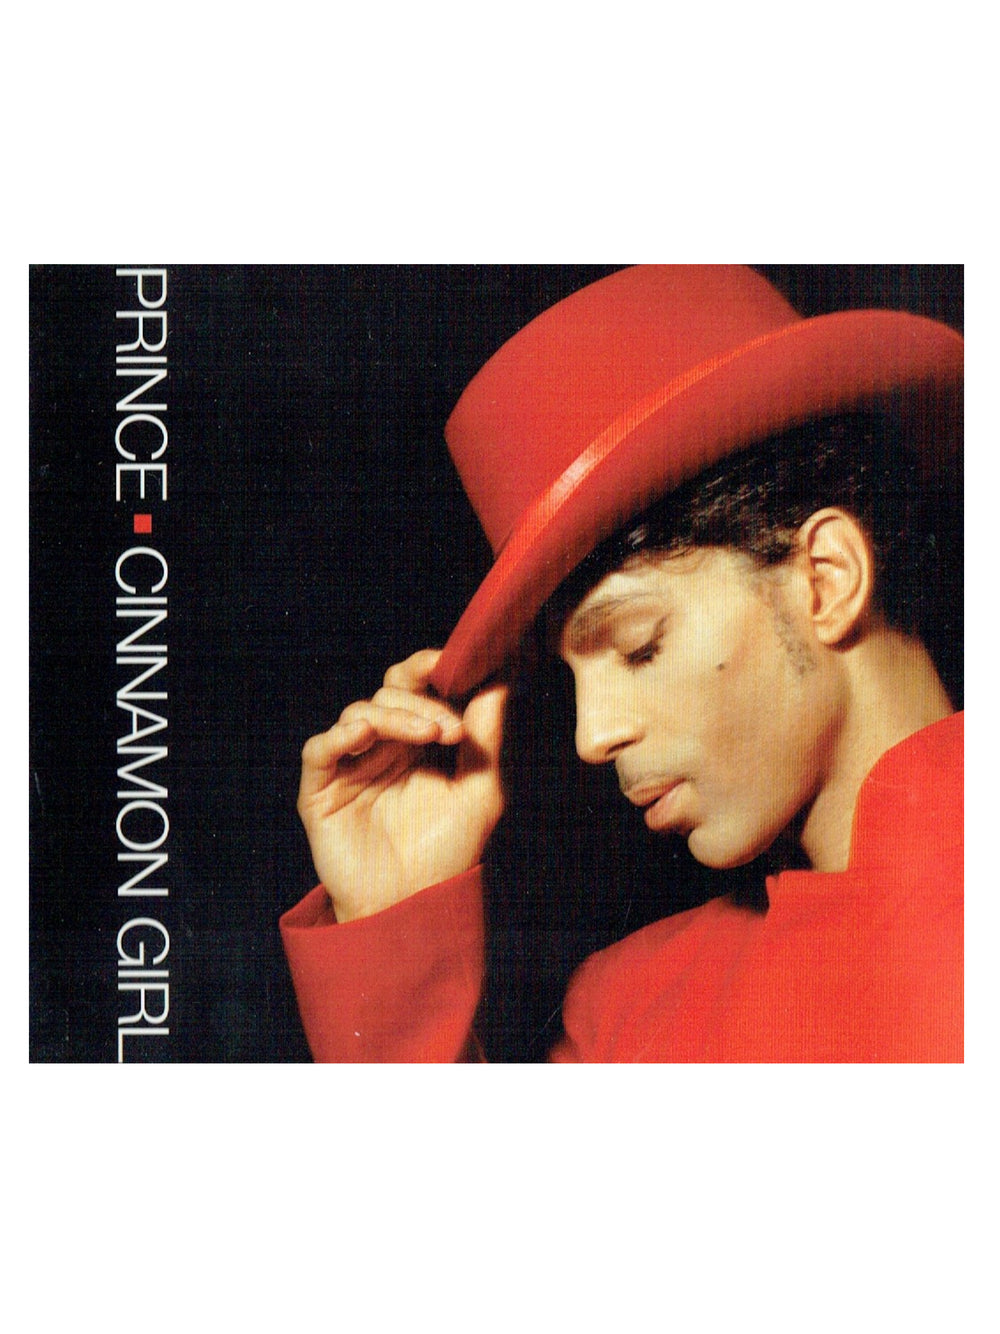 Prince – Cinnamon Girl CD Single Promo EU Preloved: 2004